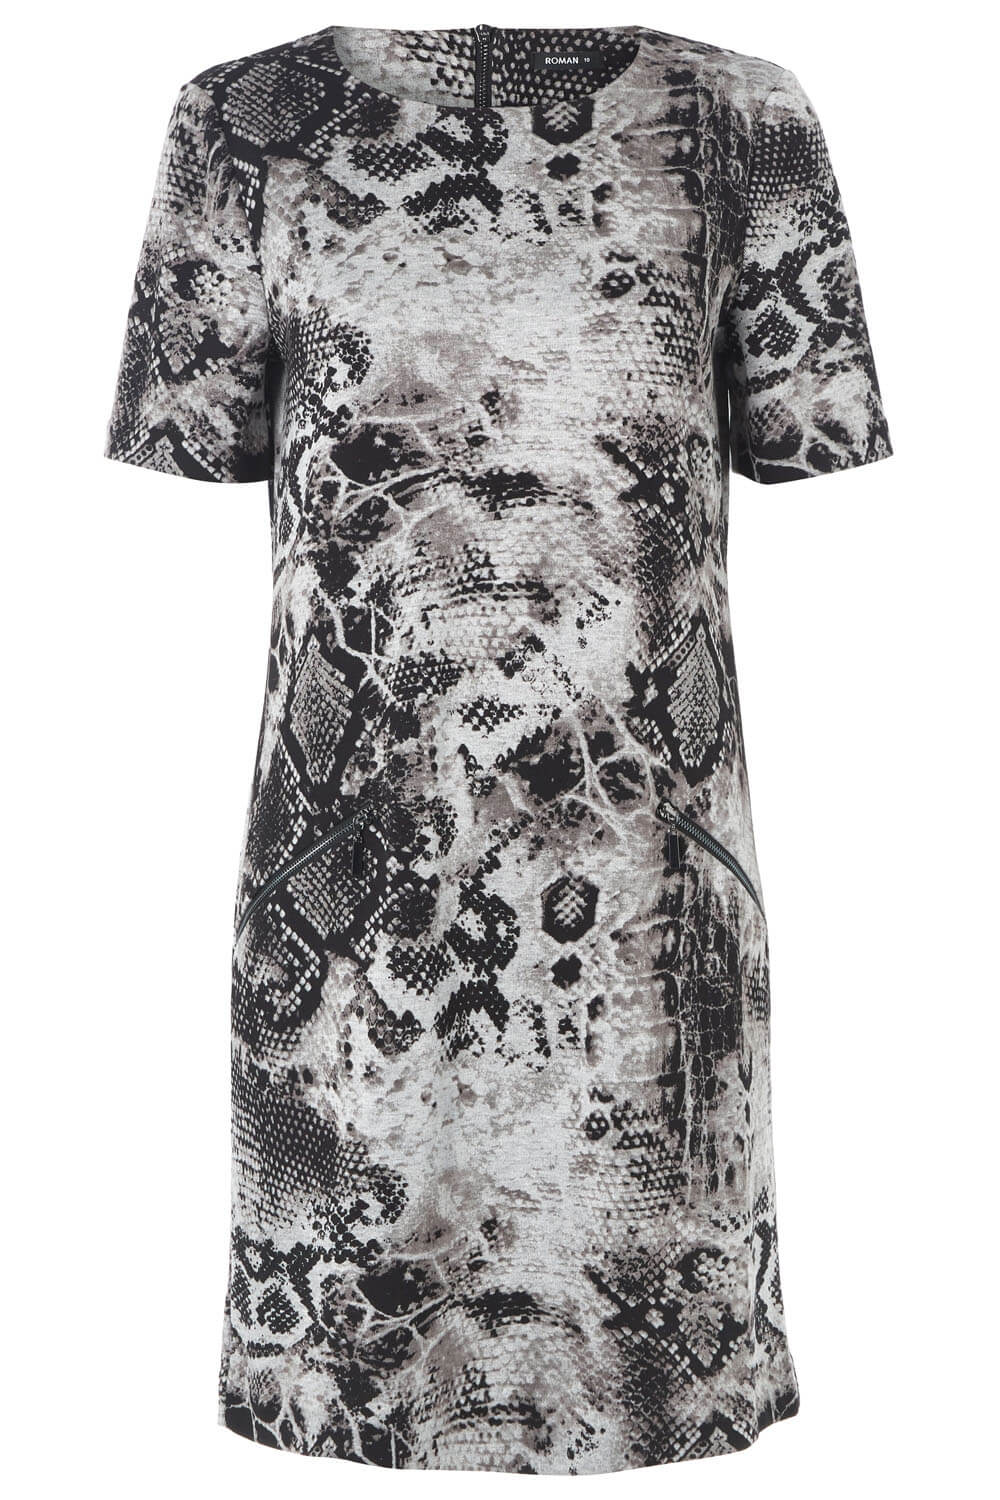 Grey Snake Print Zip Detail Shift Dress, Image 5 of 5